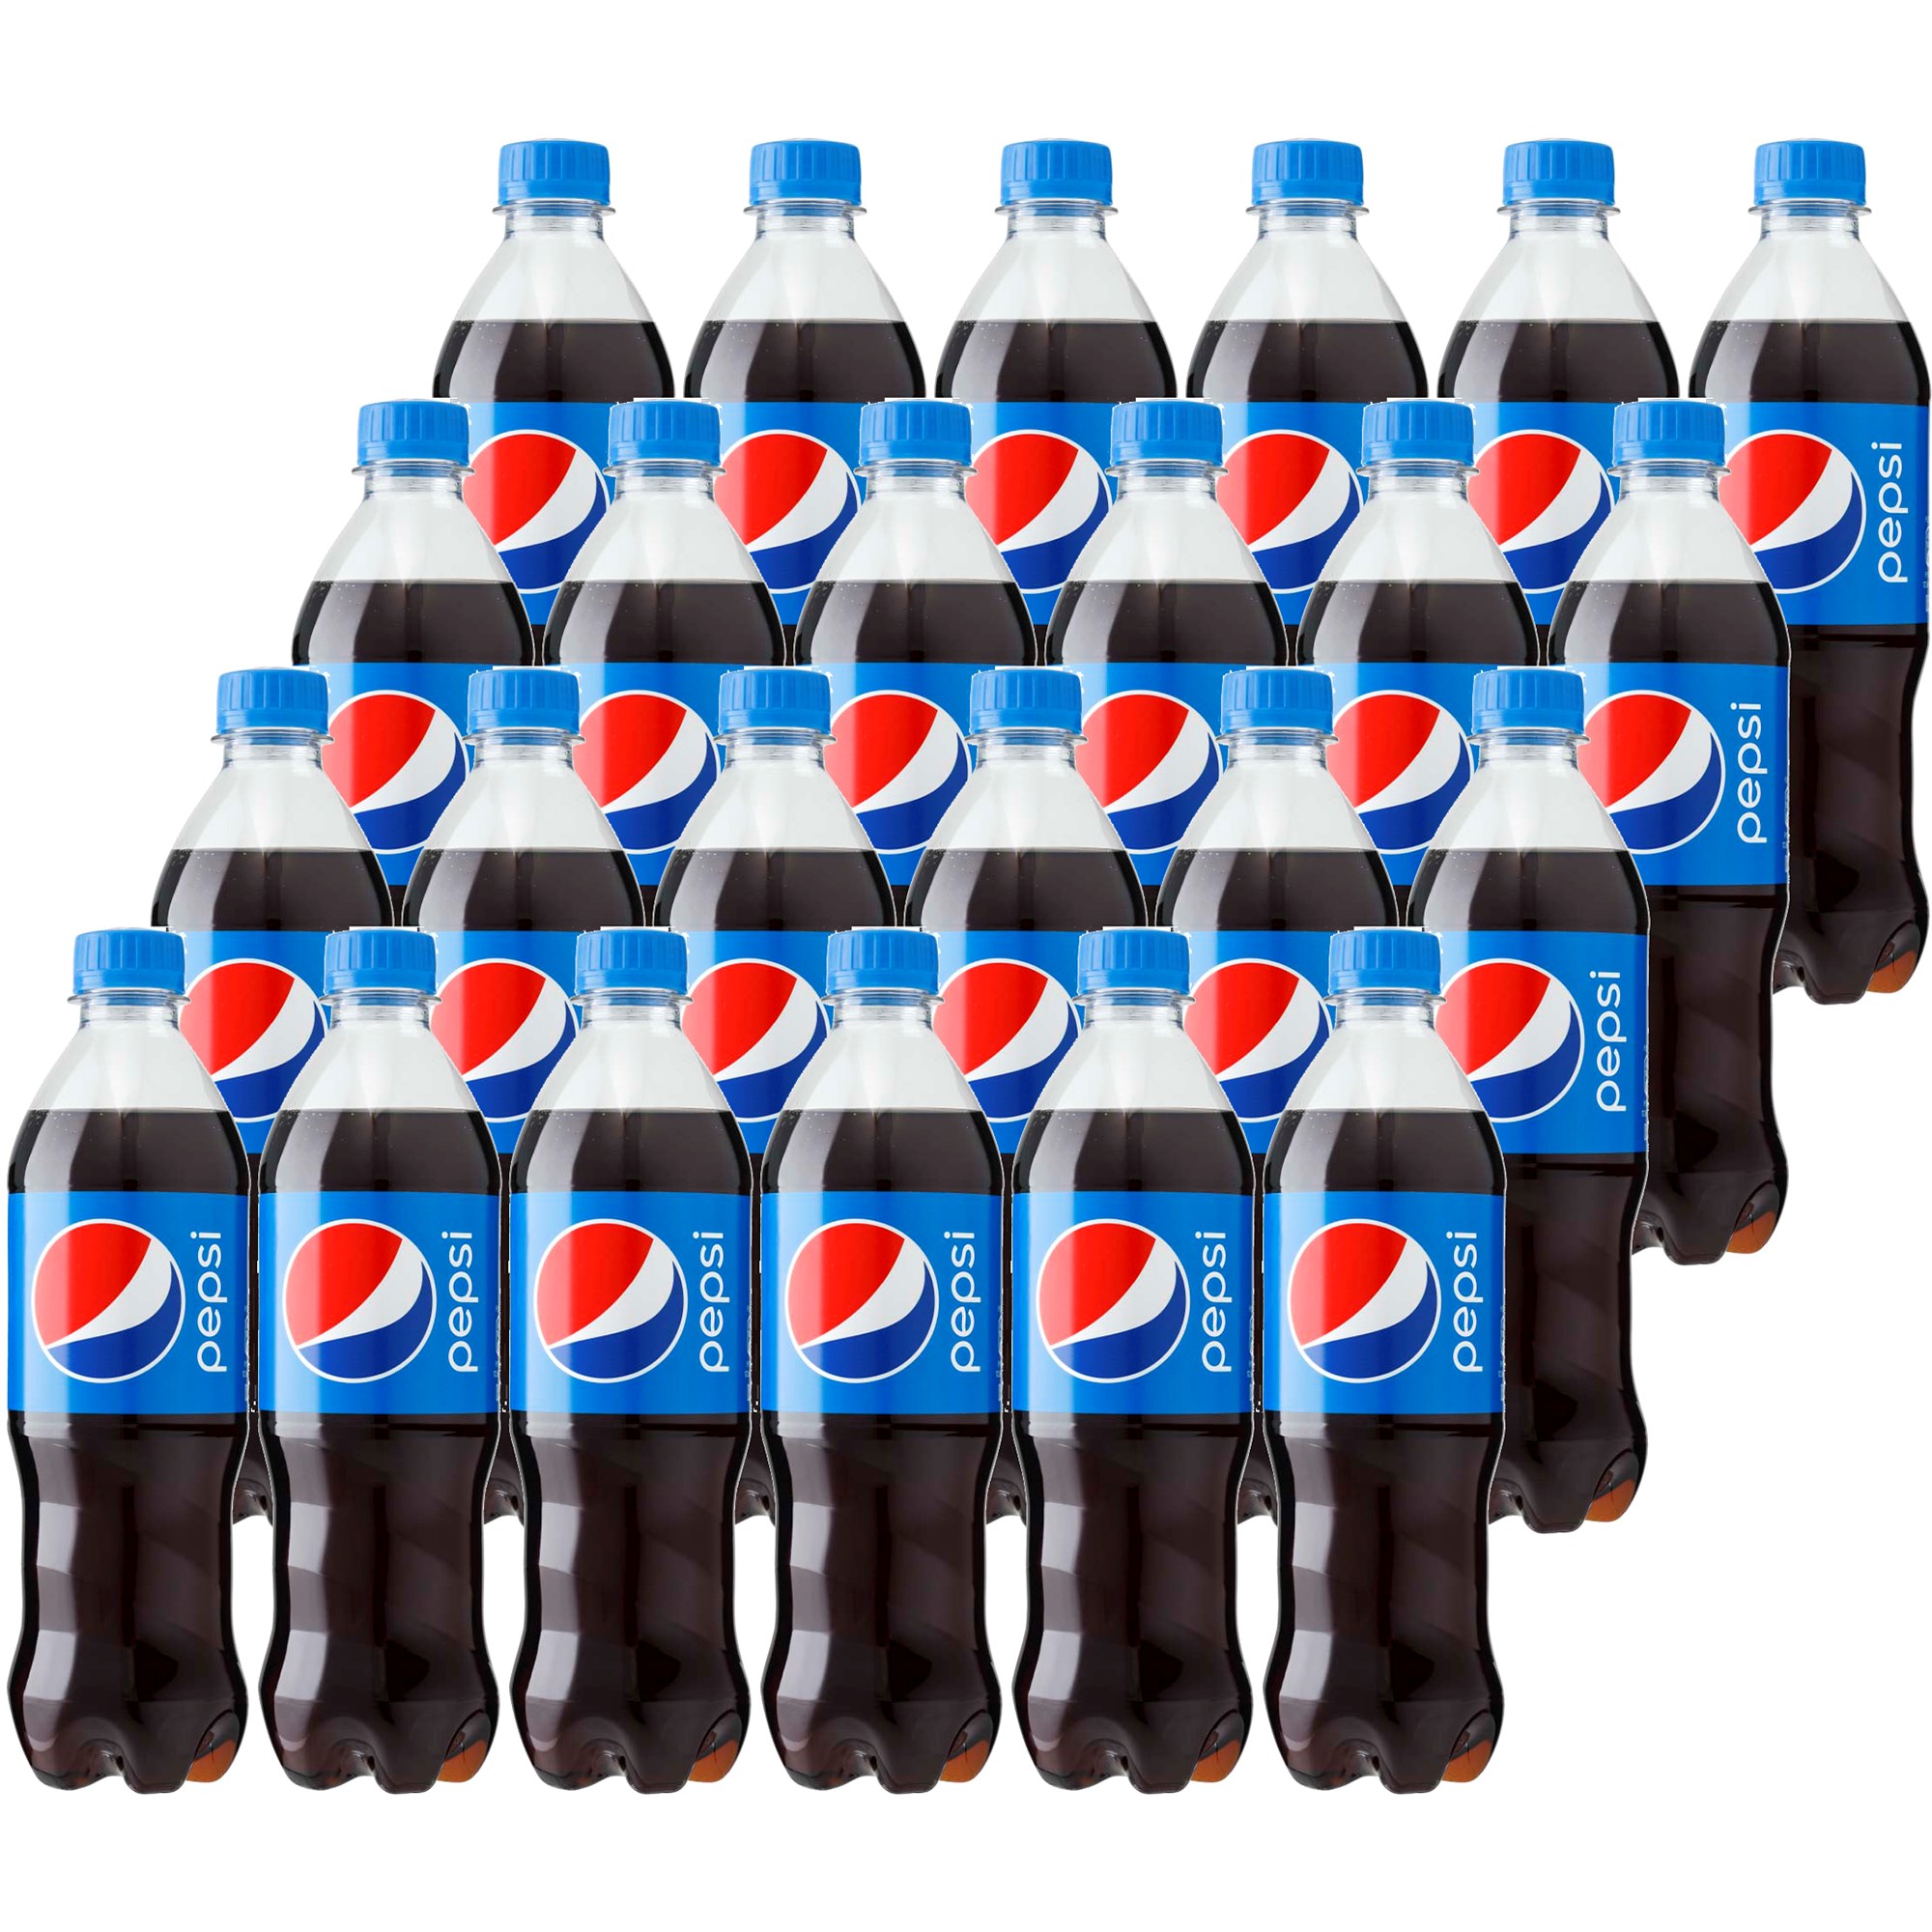 Pepsi Regular 24 x 50cl